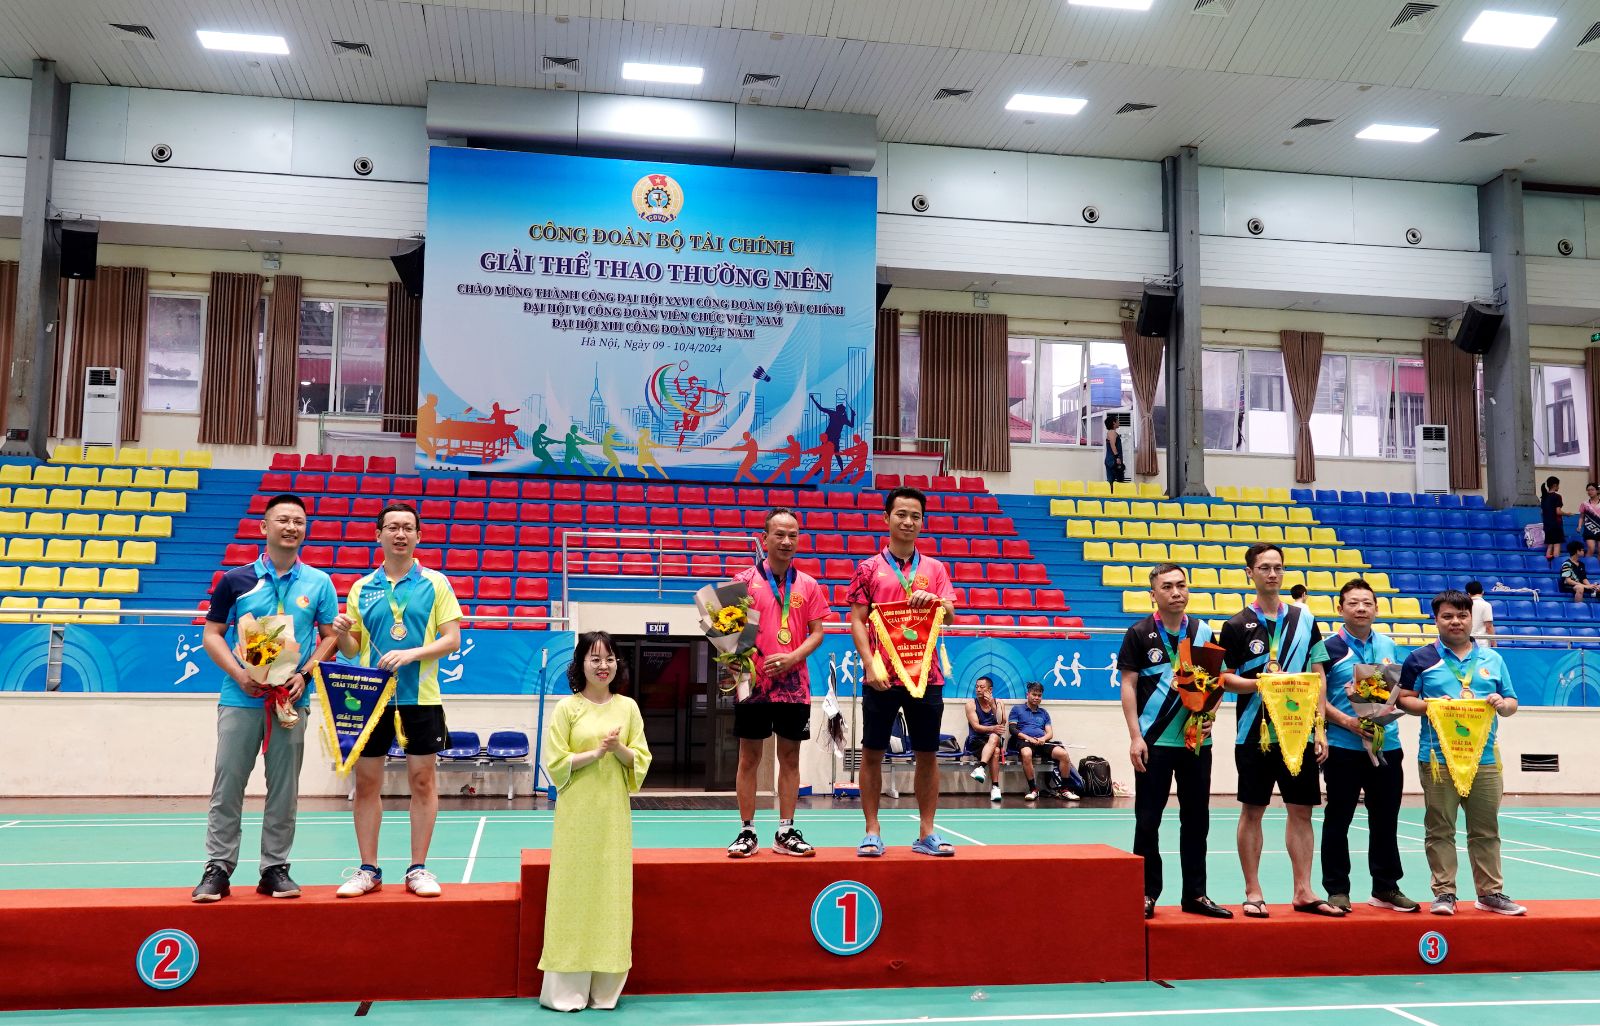 Phó Chủ tịch Công đoàn Bộ Tài chính Lê Thị Hạnh trao giải cho các vận động viên có thành tích xuất sắc ở bộ môn Bóng bàn